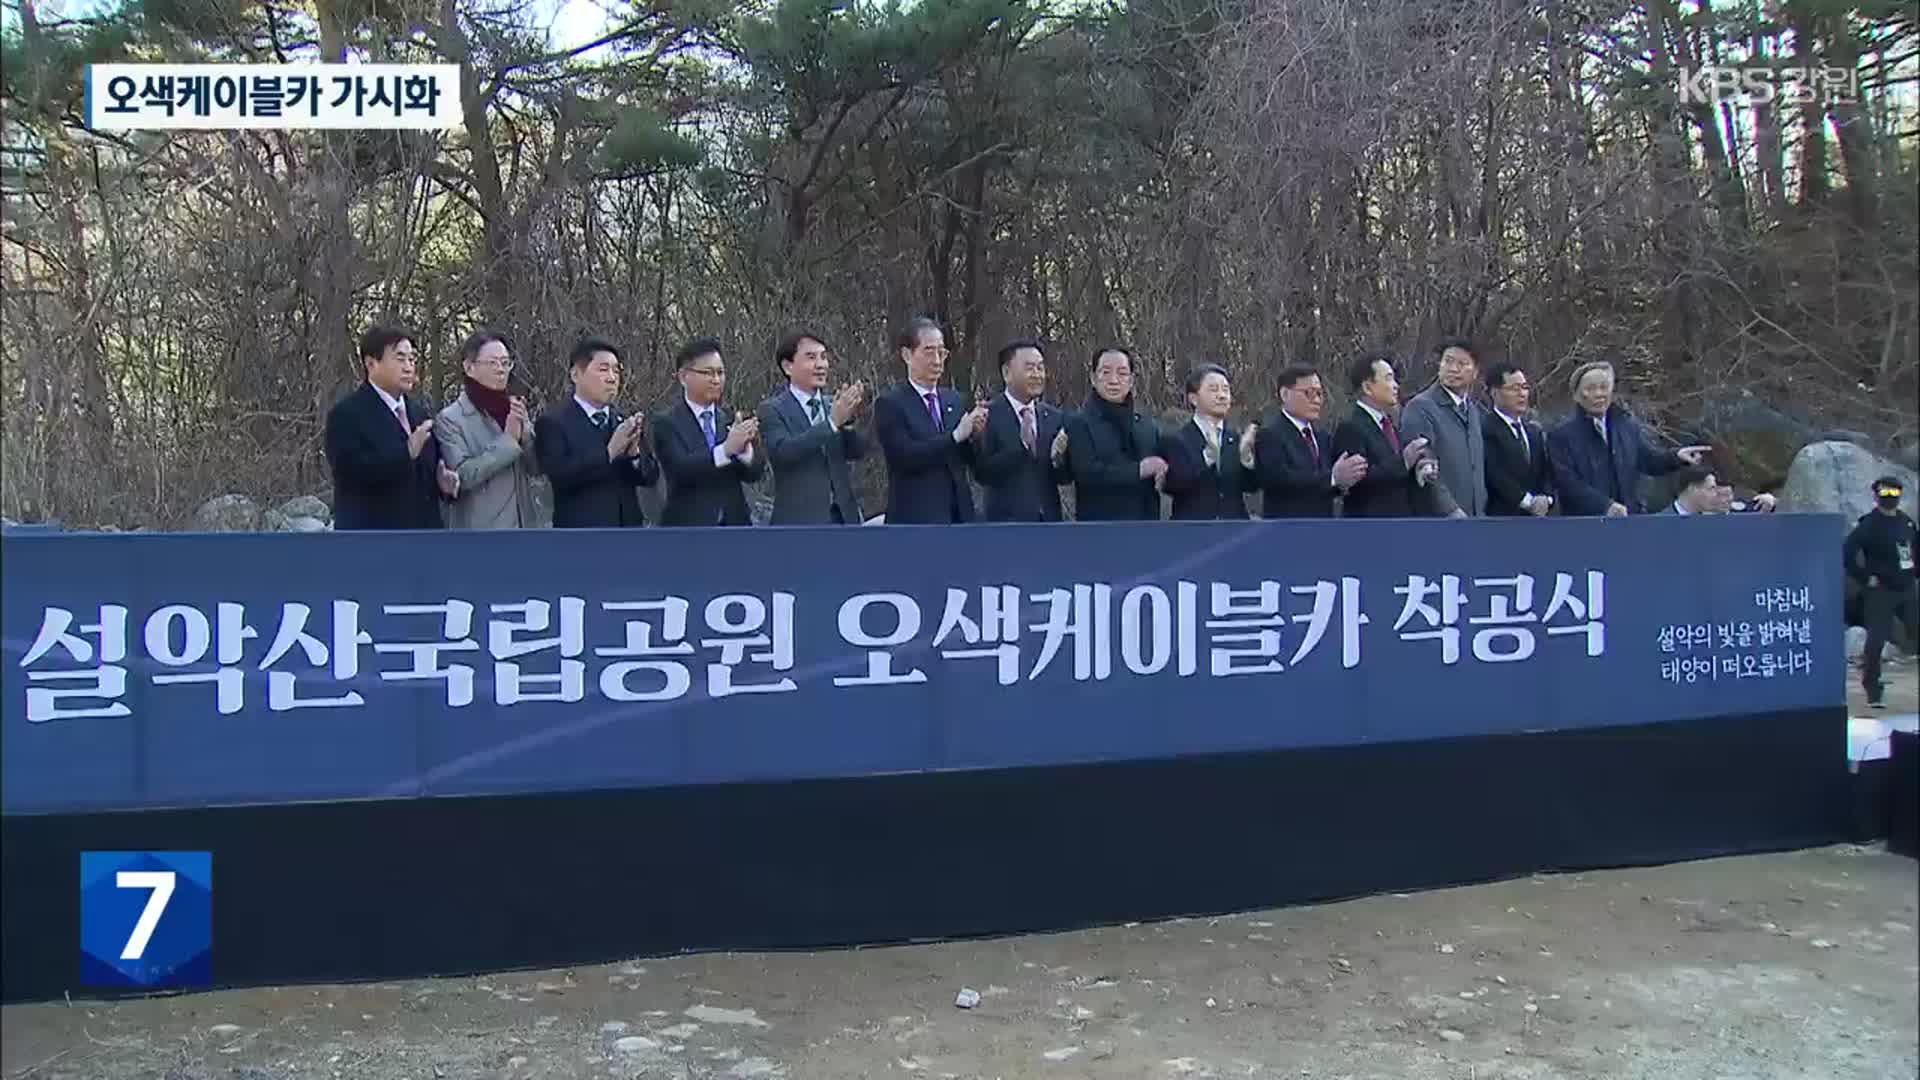 오색케이블카 40여 년 만에 허가, ‘착공식’ 개최